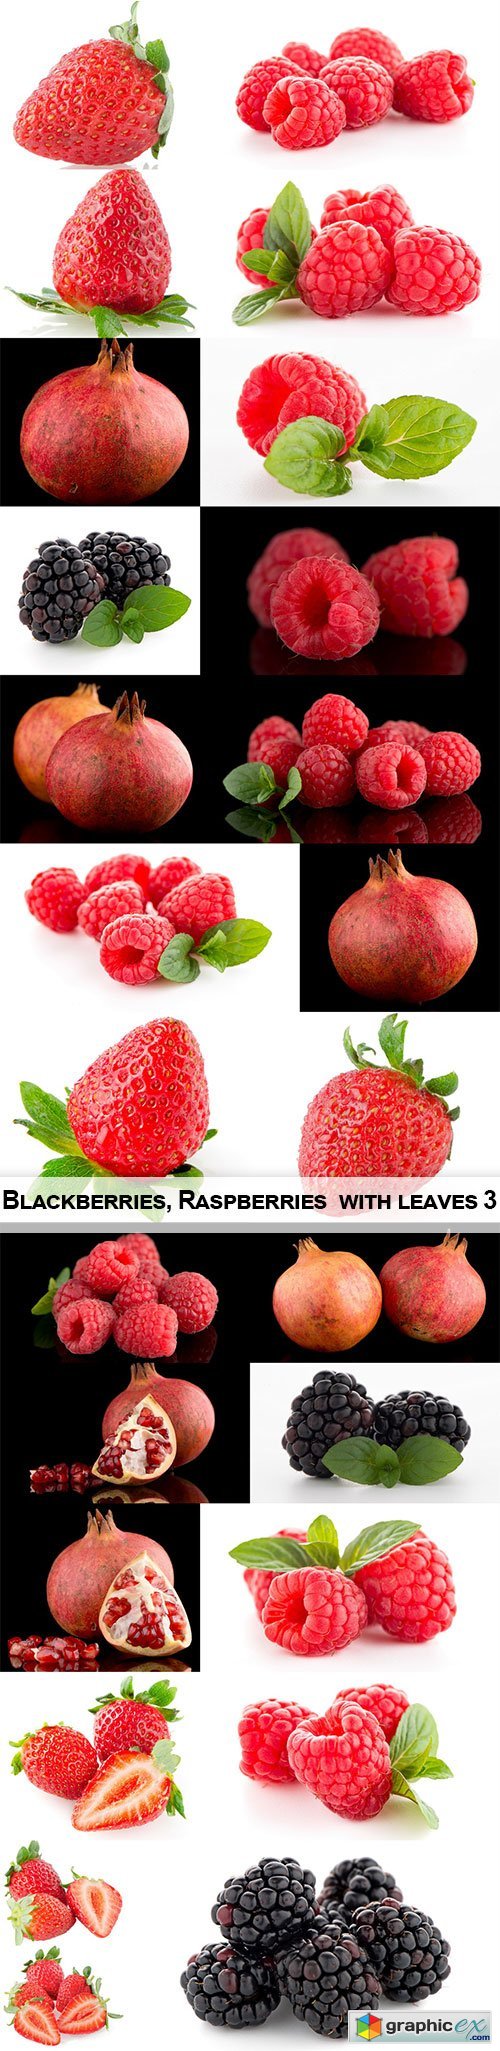 Blackberries, Raspberries with leaves 3